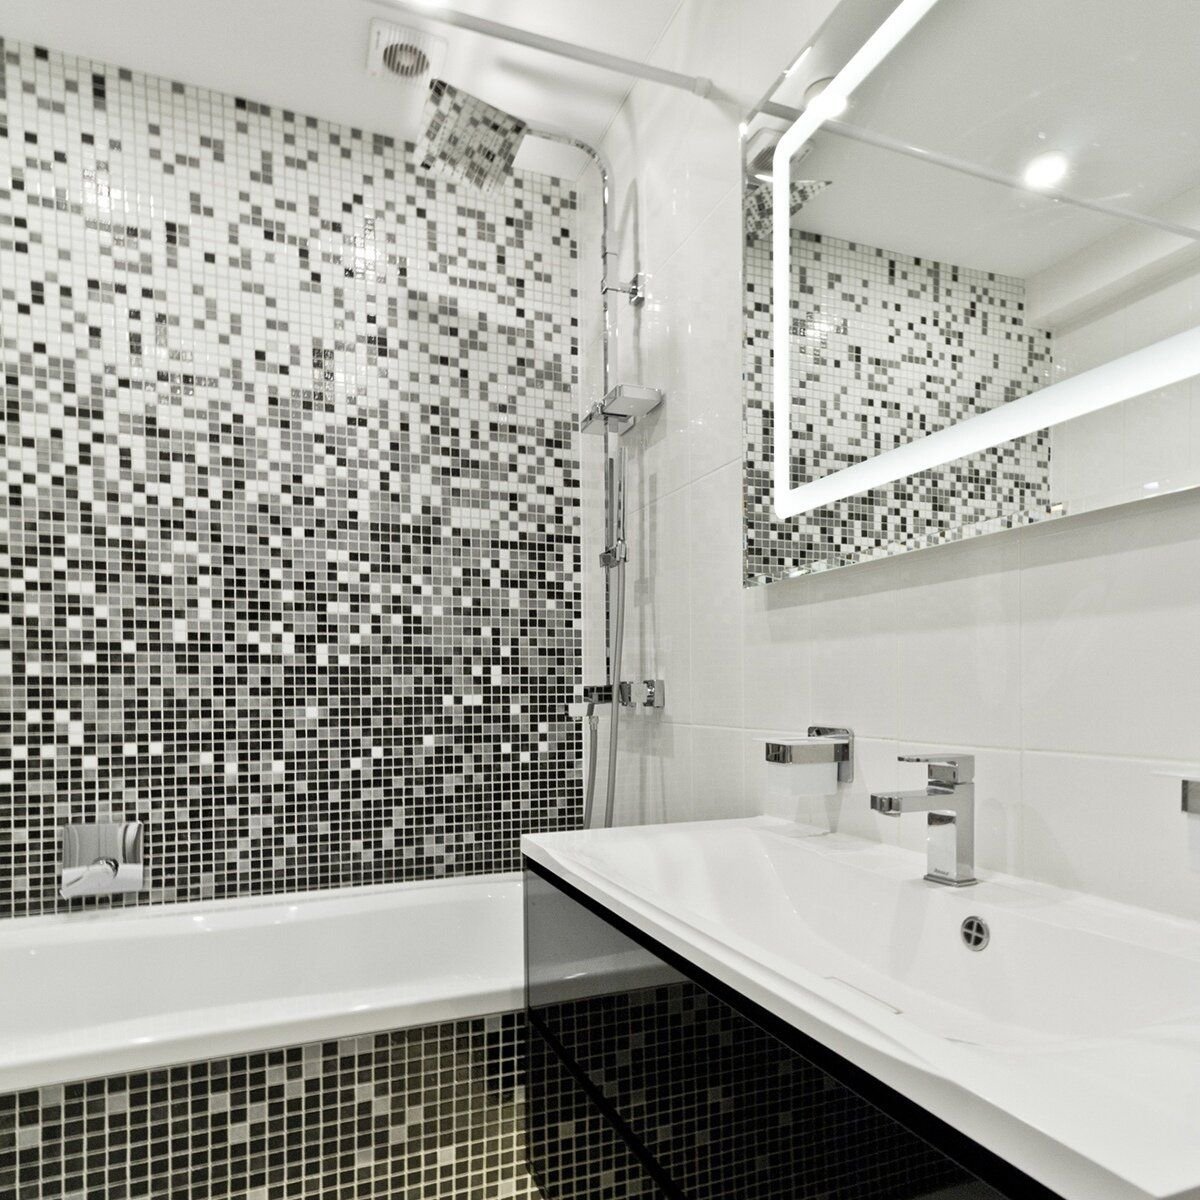 Что делать, если хочется сделать красивый и функциональный дизайн в ванной комнате, а бюджет ограничен